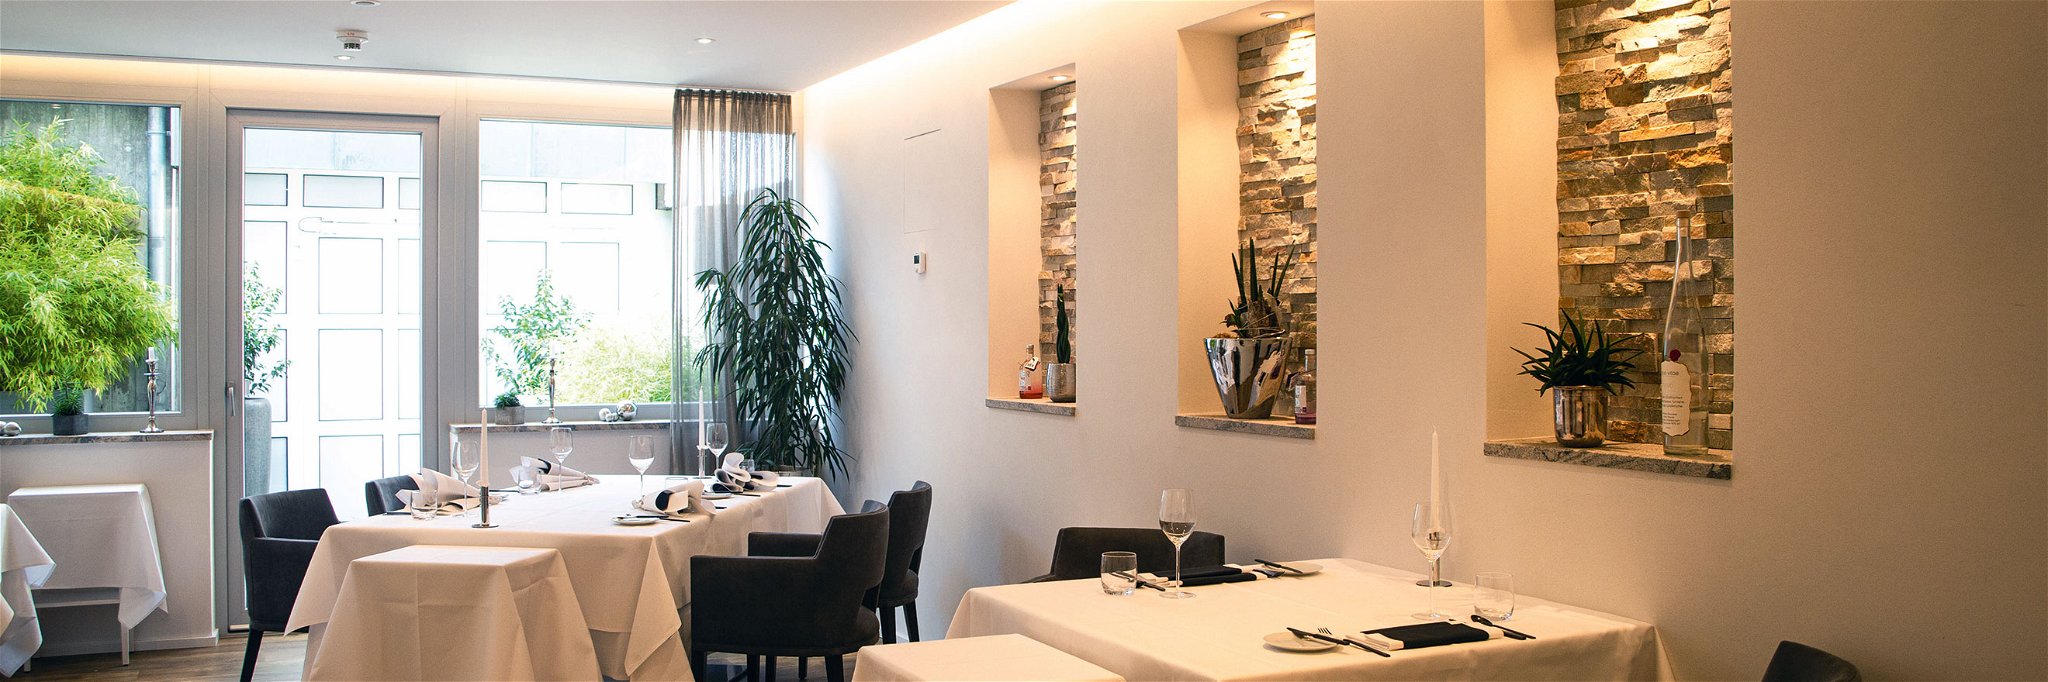 Modernes Gourmetzimmer mit 18 Plätzen: »Nova« in Herrenberg.